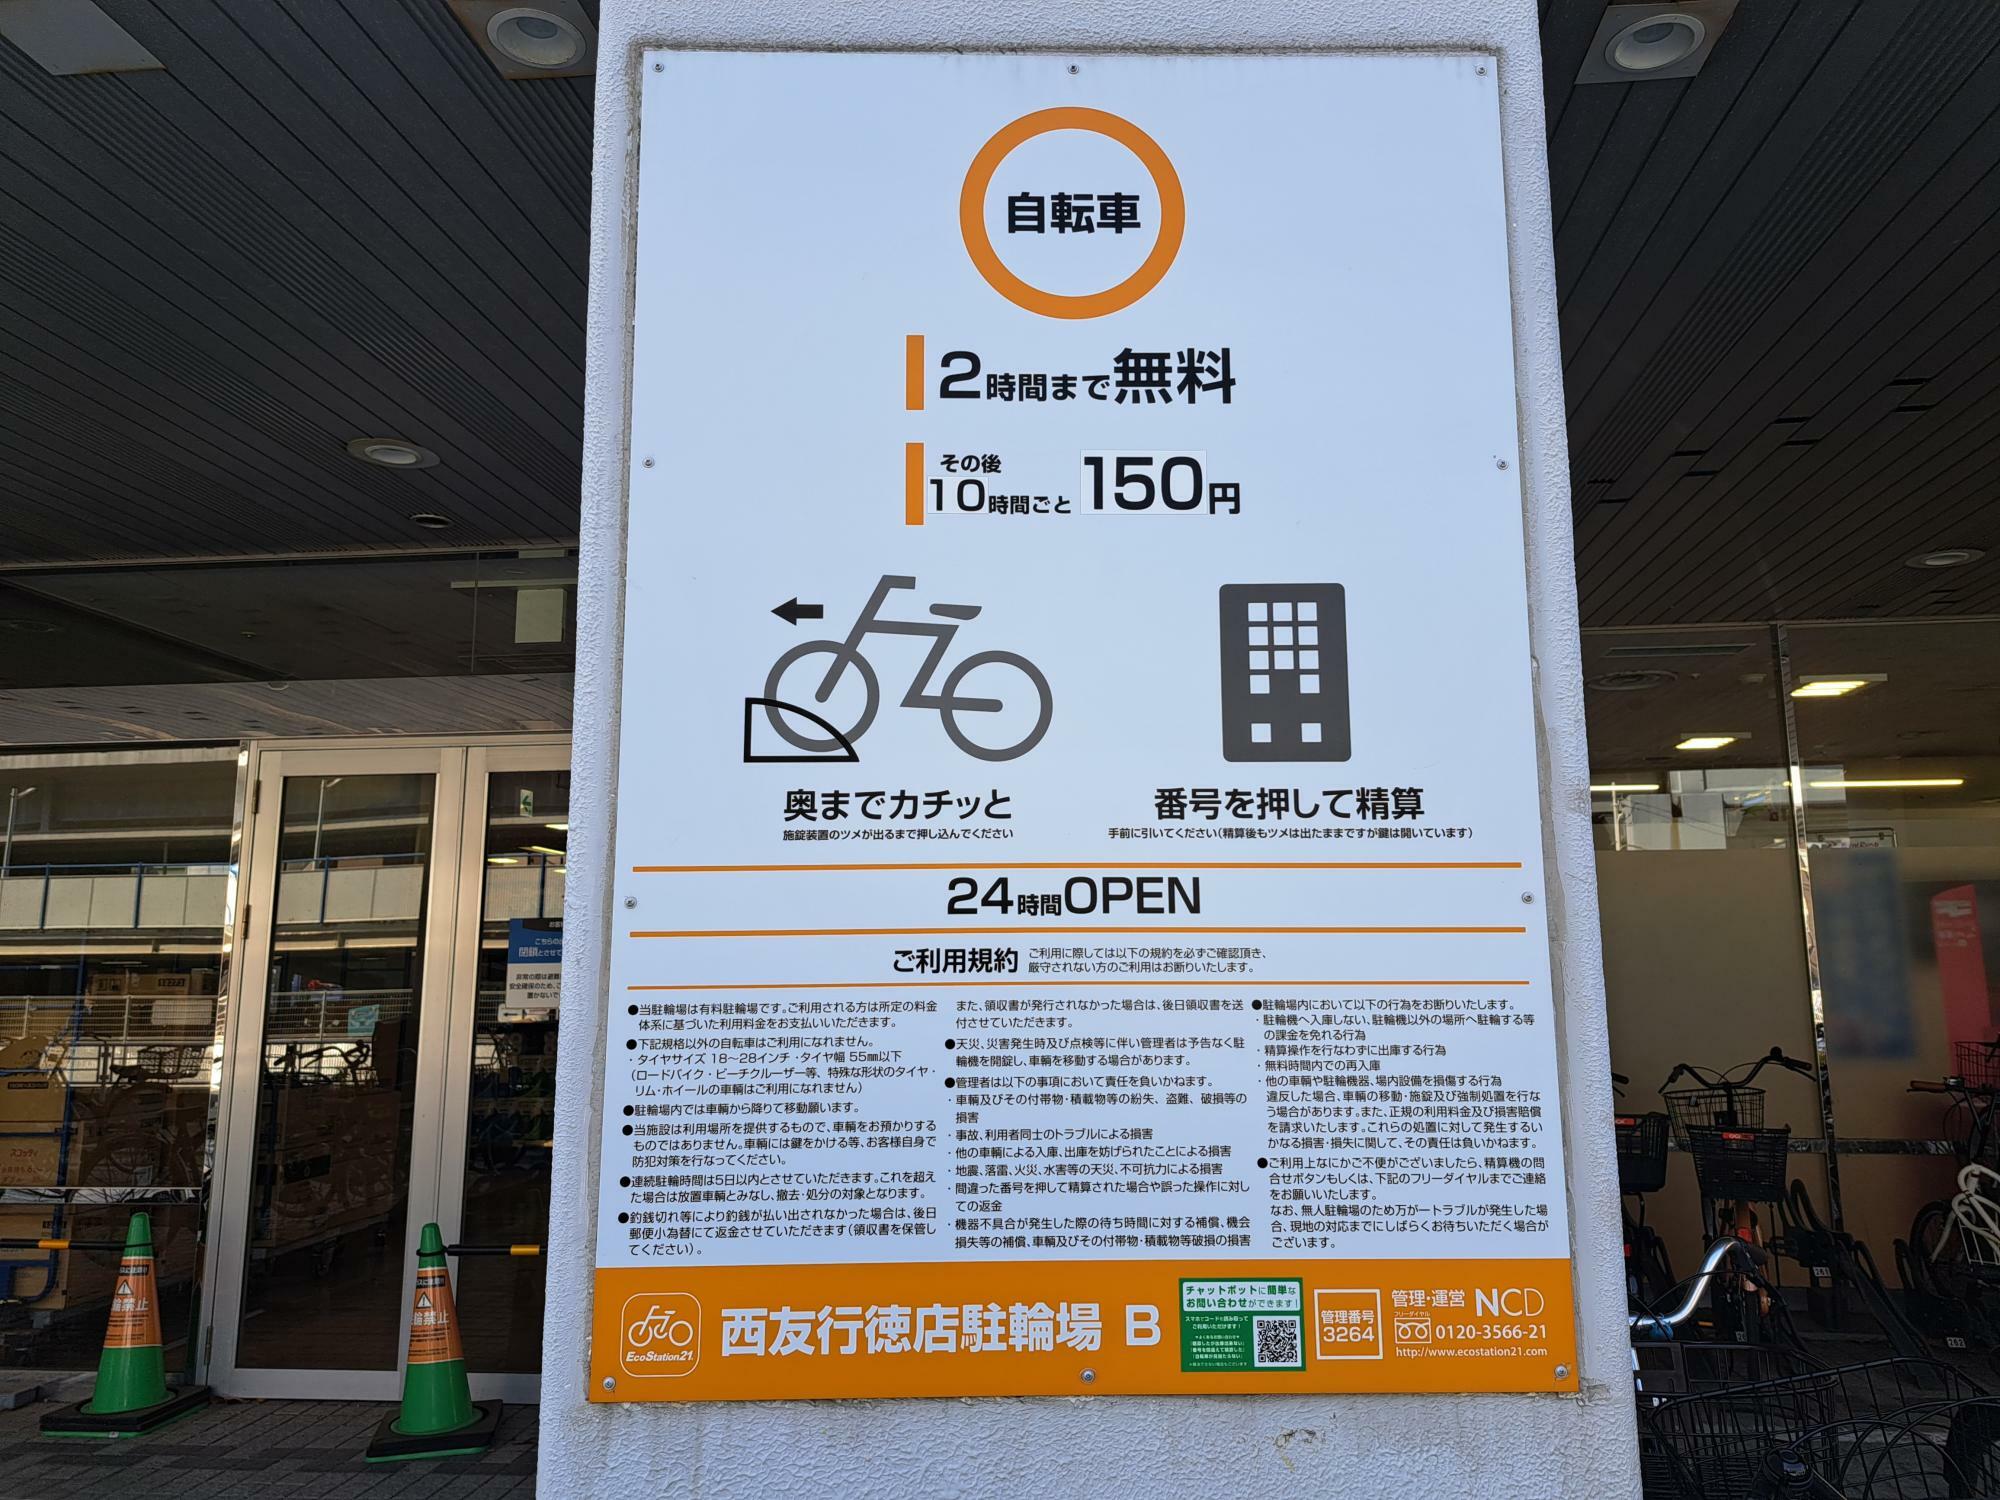 西友行徳店の駅から遠いエリアの駐輪場は10時間ごとに150円。なので無料時間を含めると12時間で150円！